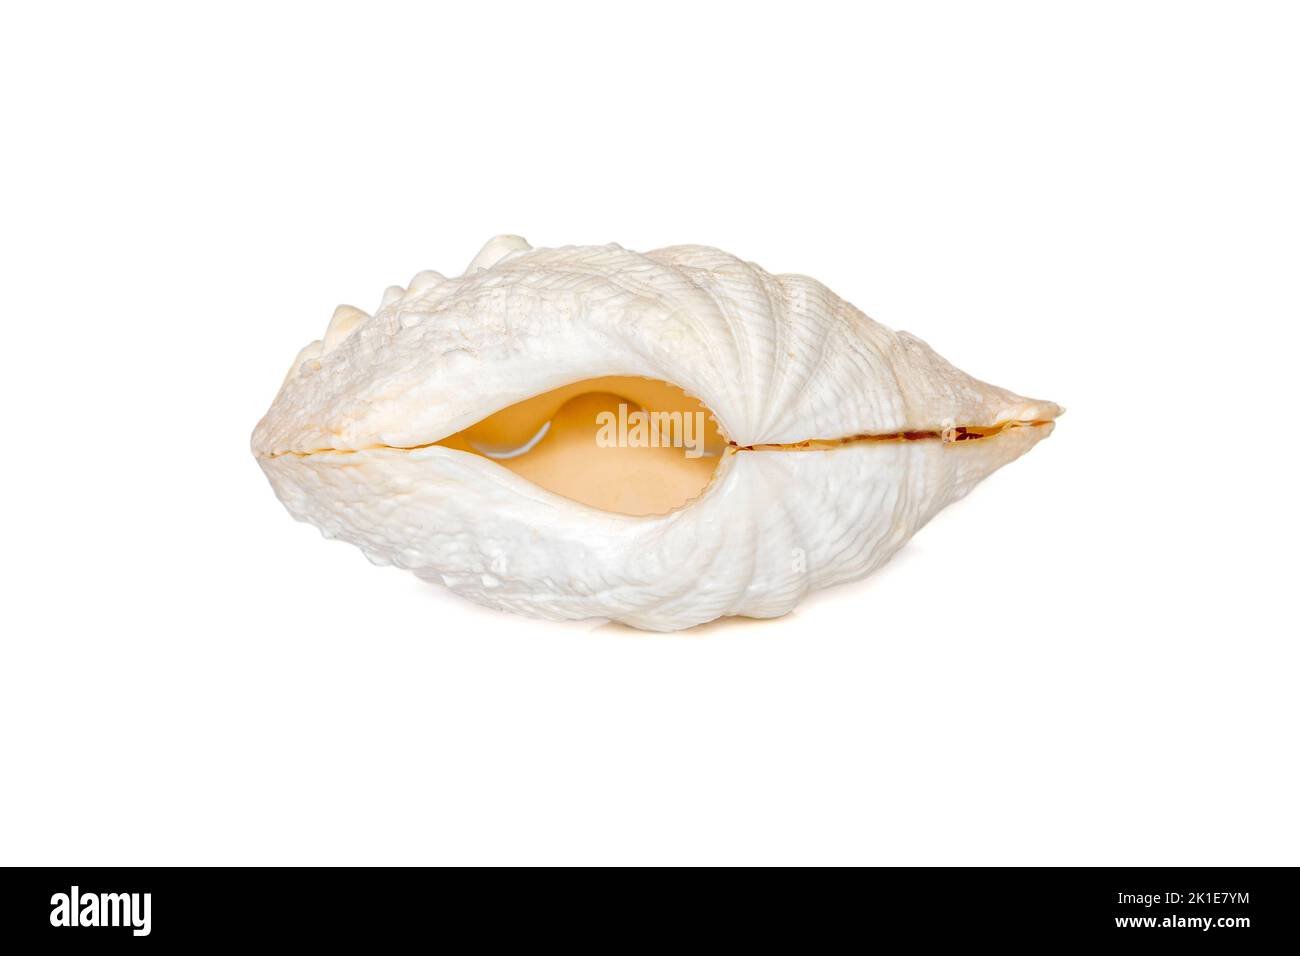 Image de coquillages perlés sur fond blanc. Animaux sous-marins. Coquillages. Banque D'Images